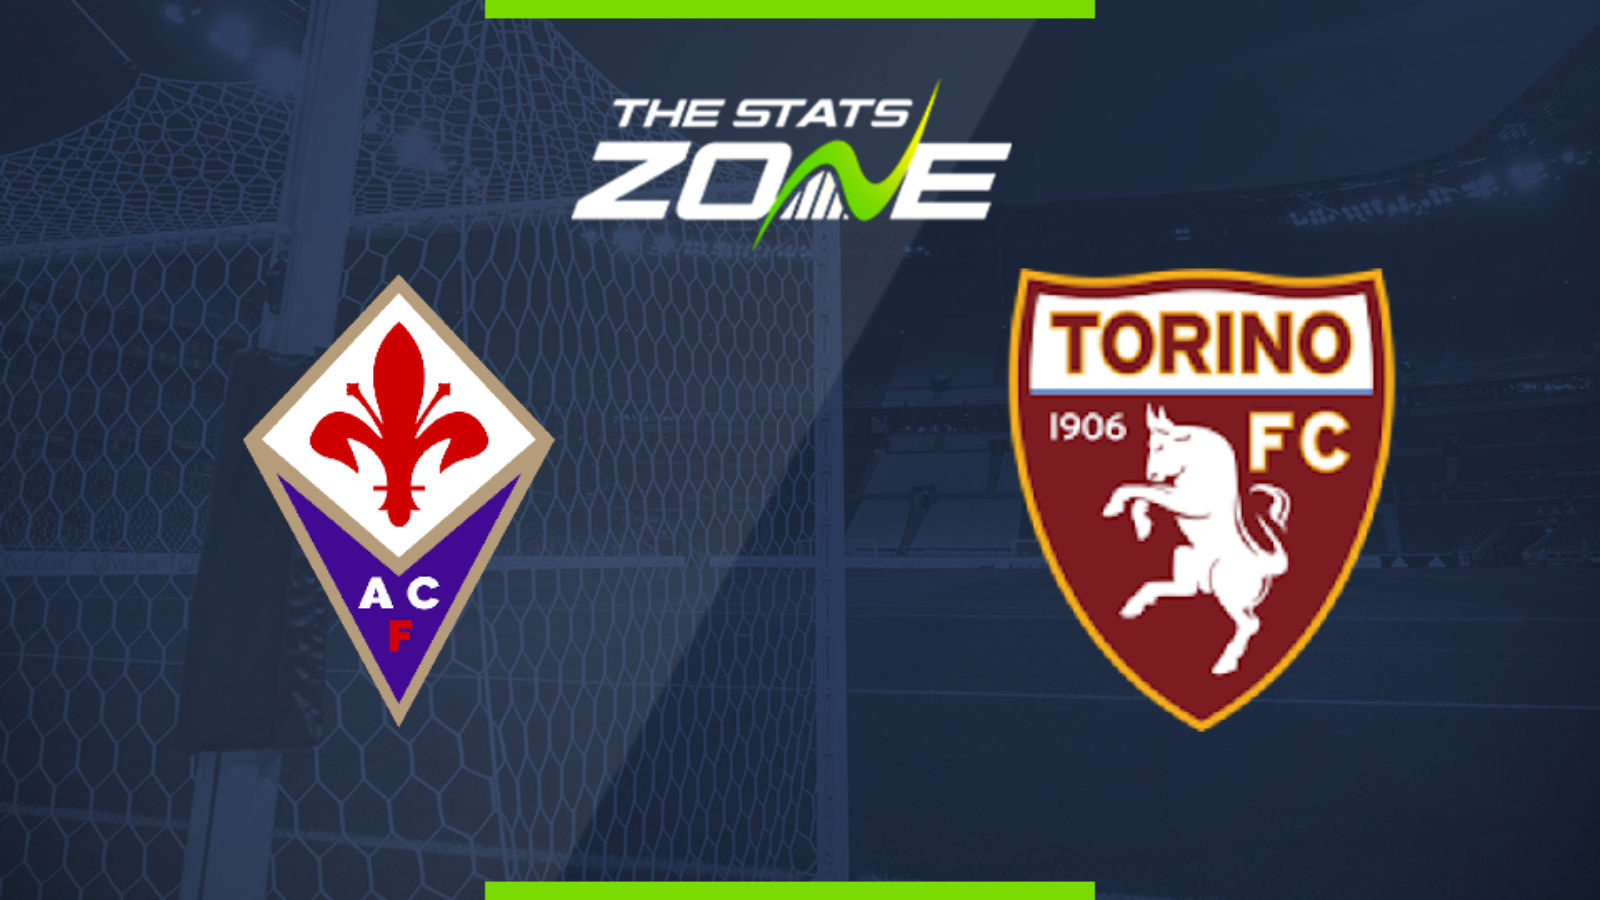 2019-20 Serie A – Fiorentina vs Torino Preview & Prediction - The Stats